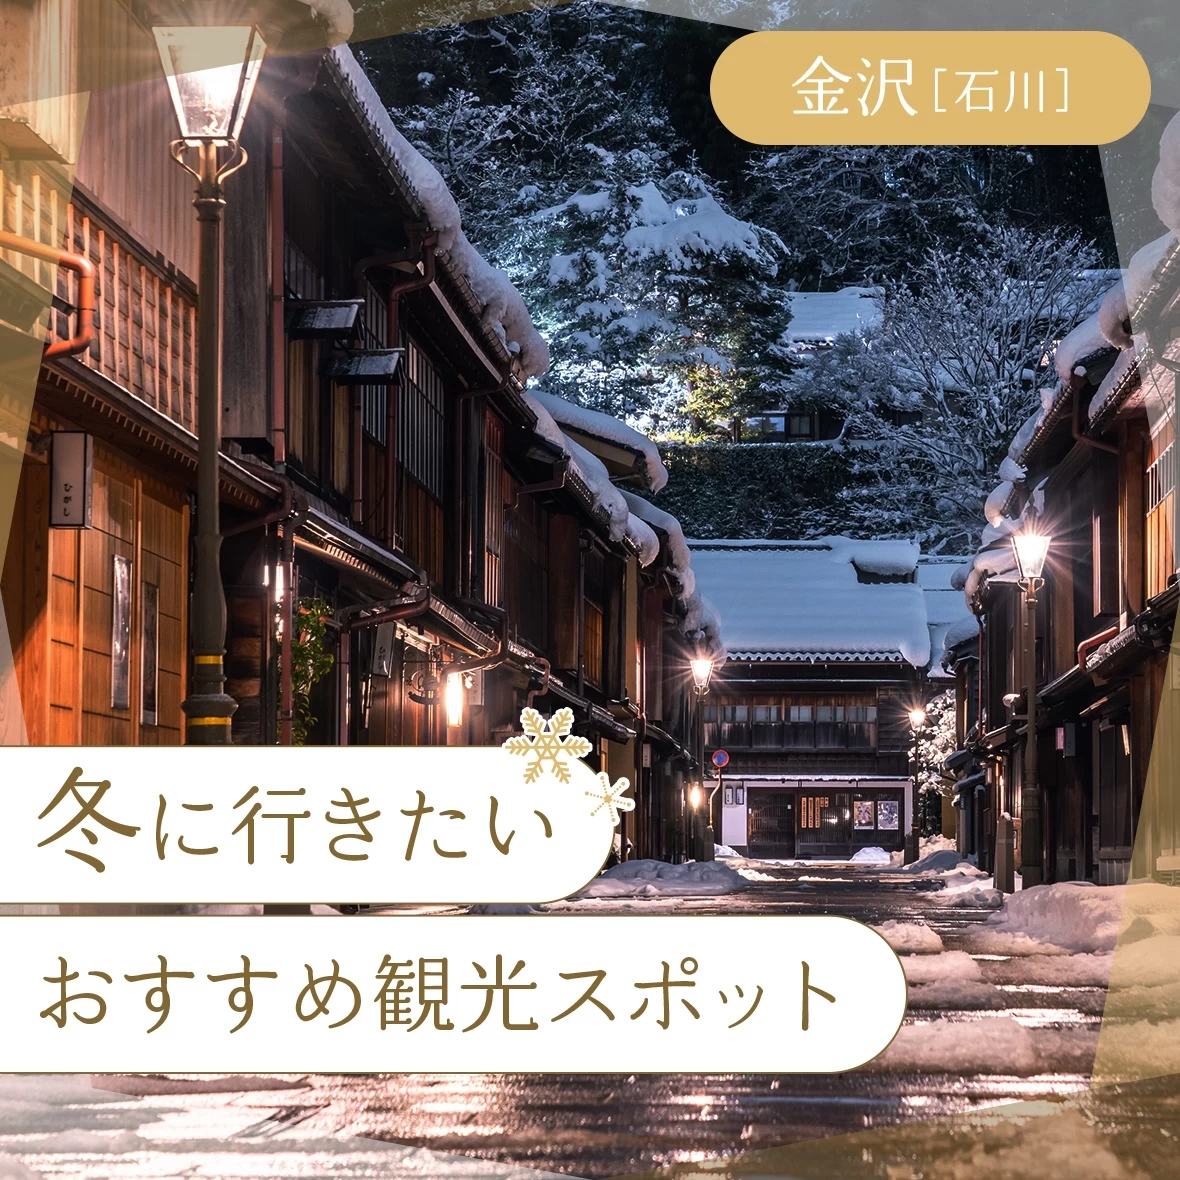 【石川・金沢】冬に行きたいおすすめ観光スポット12選 